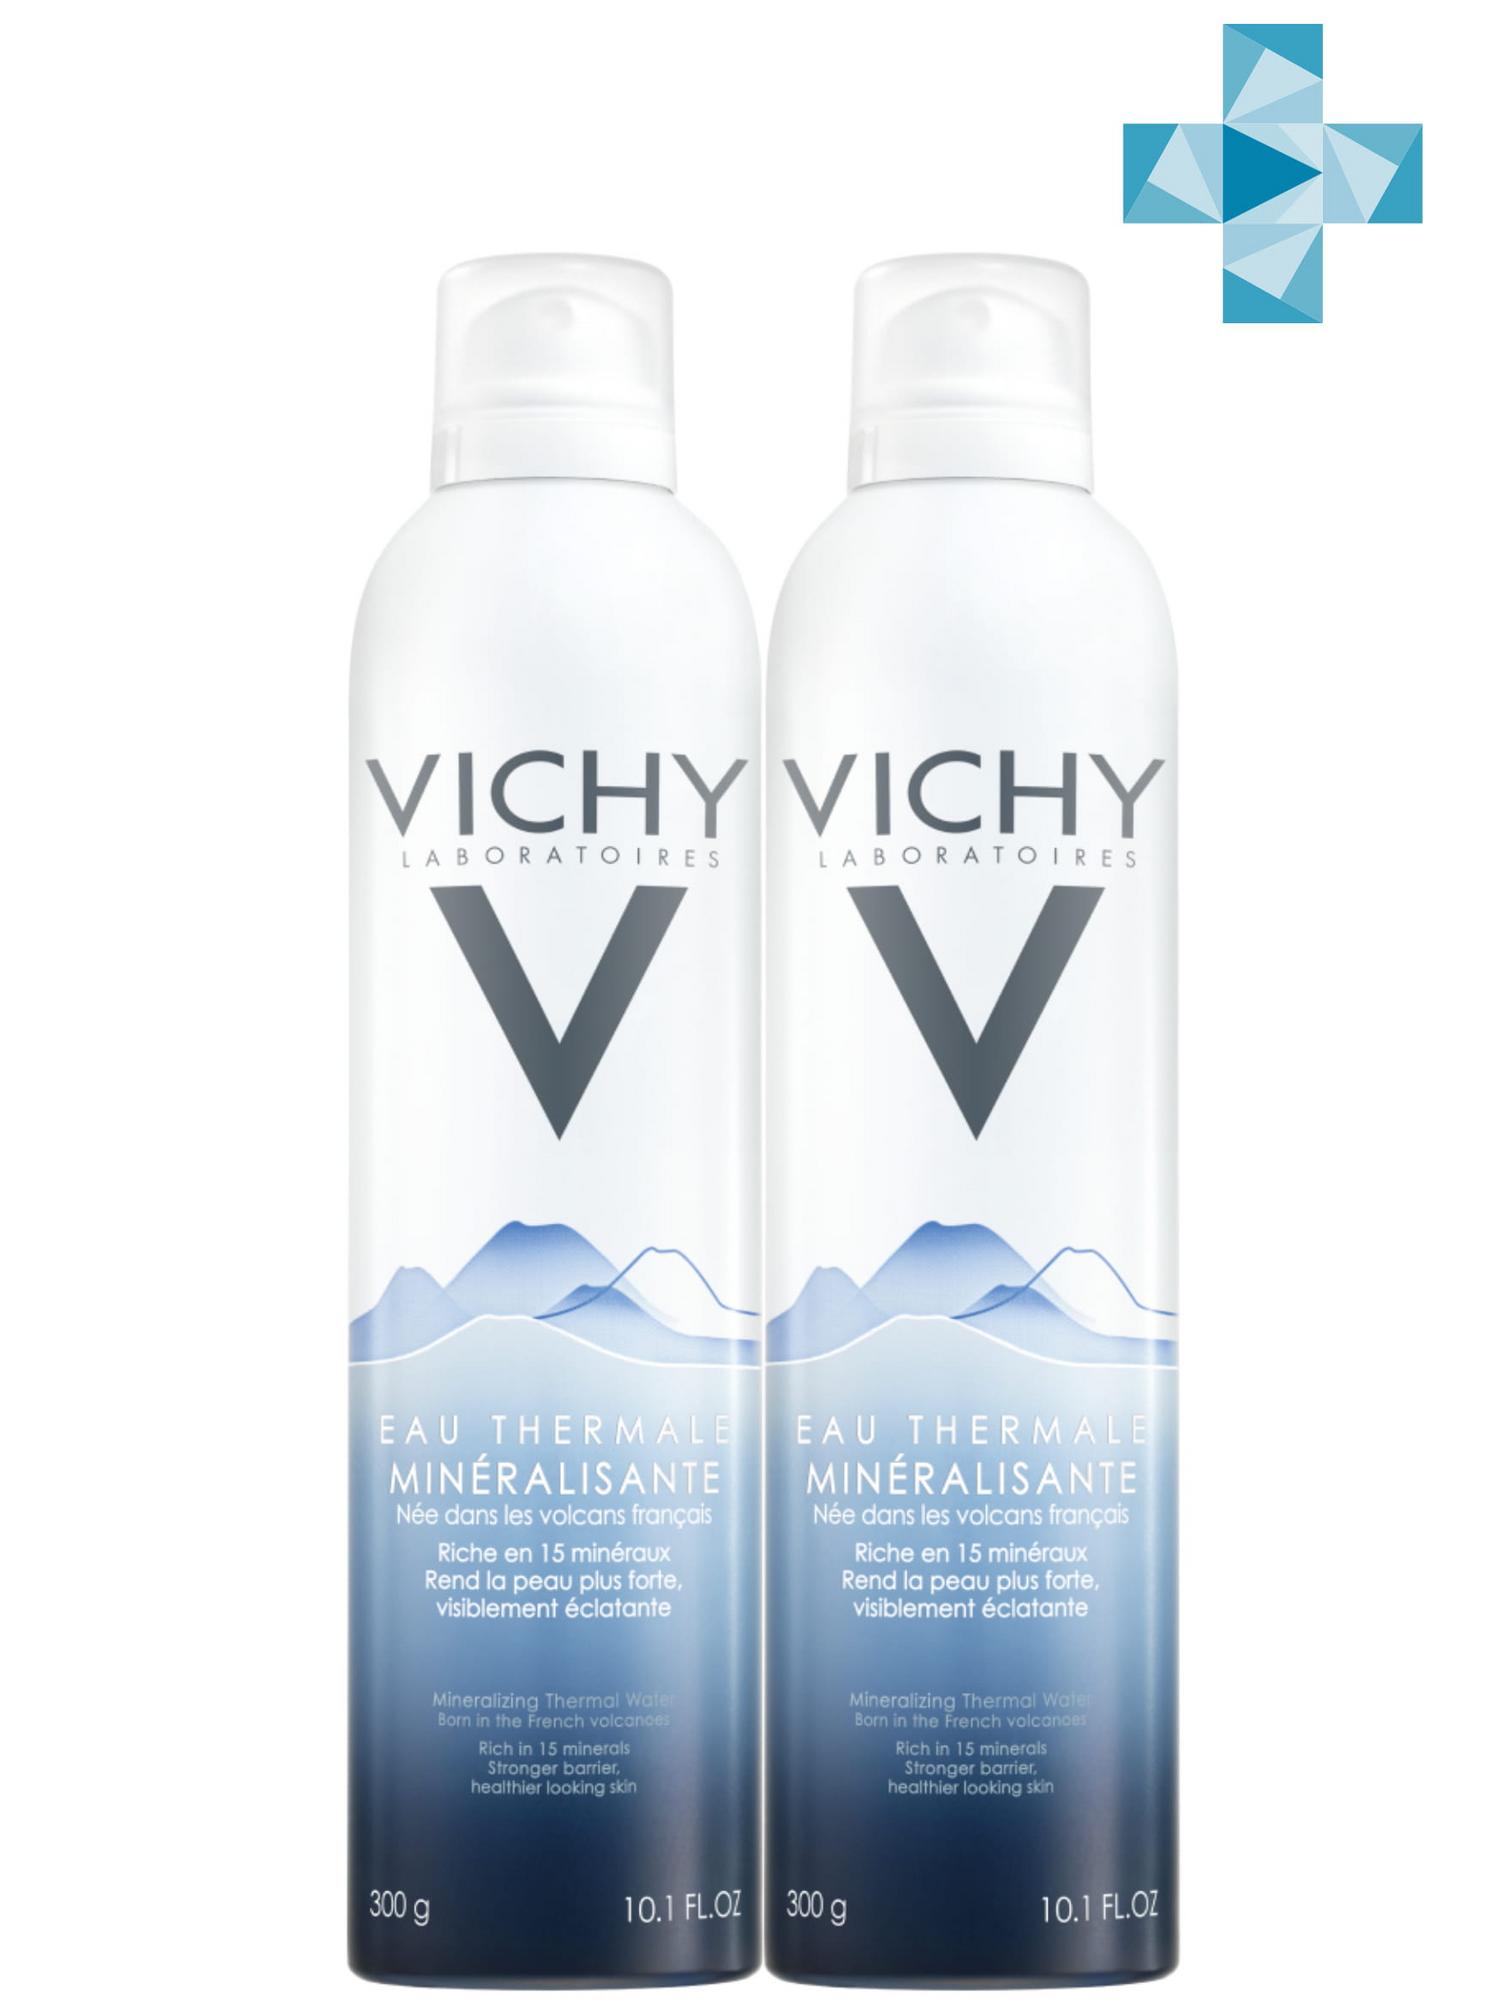 Vichy Комплект Вулканическая термальная вода, 2 х 300 мл (Vichy, Thermal Water Vichy) vichy термальная вода thermal water 50 мл